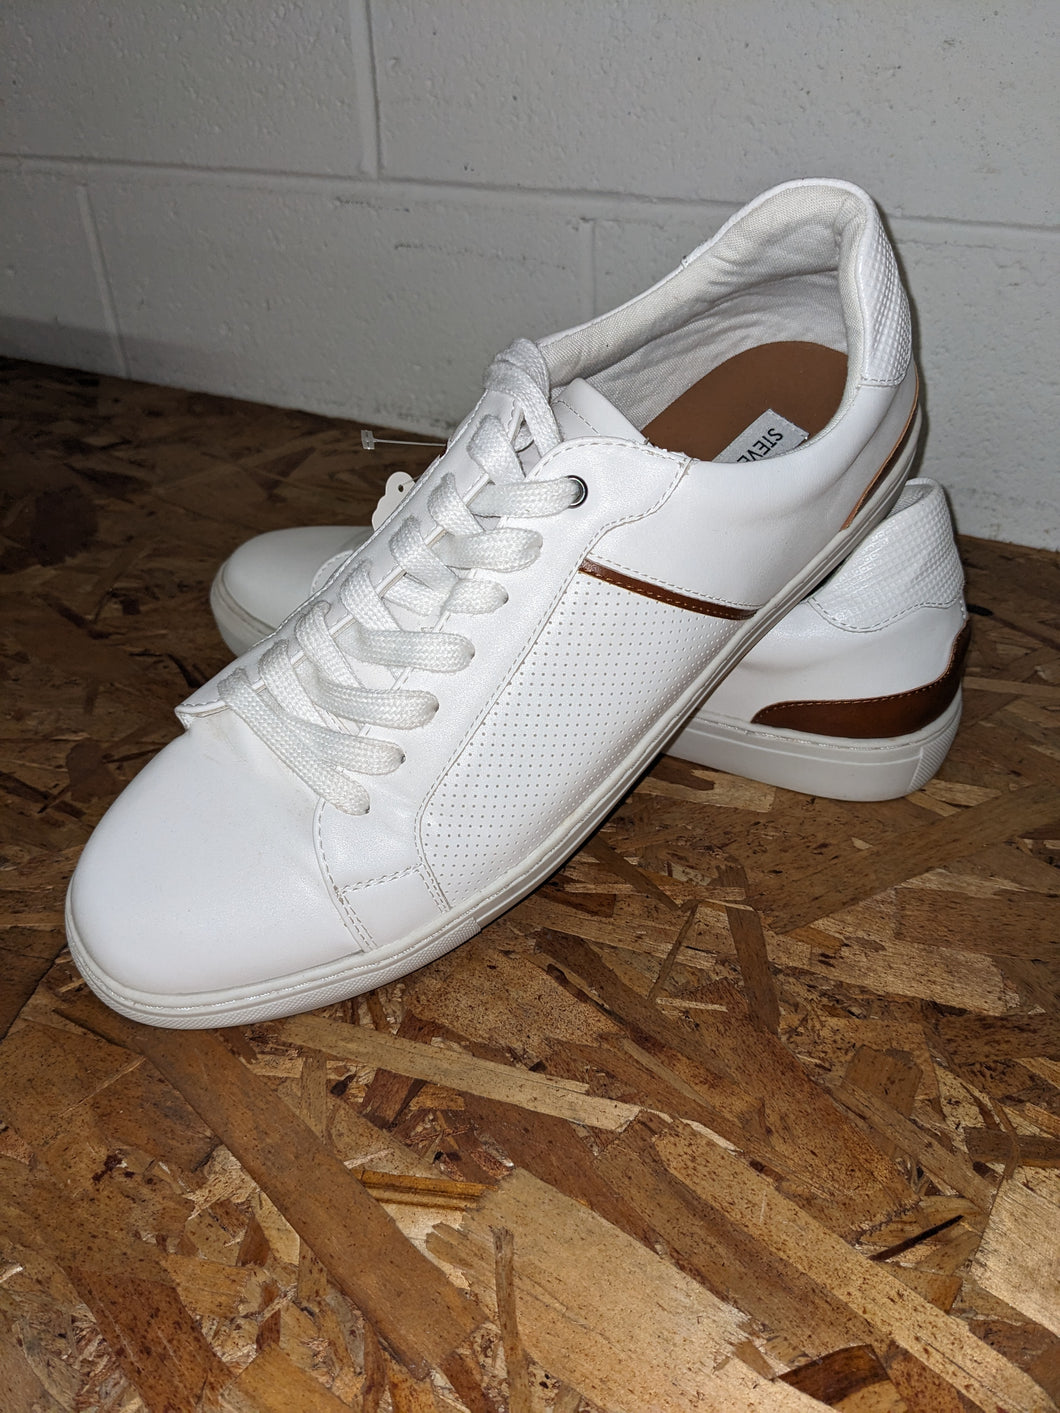 Men's Steve Madden sneakers, white, size 10.5